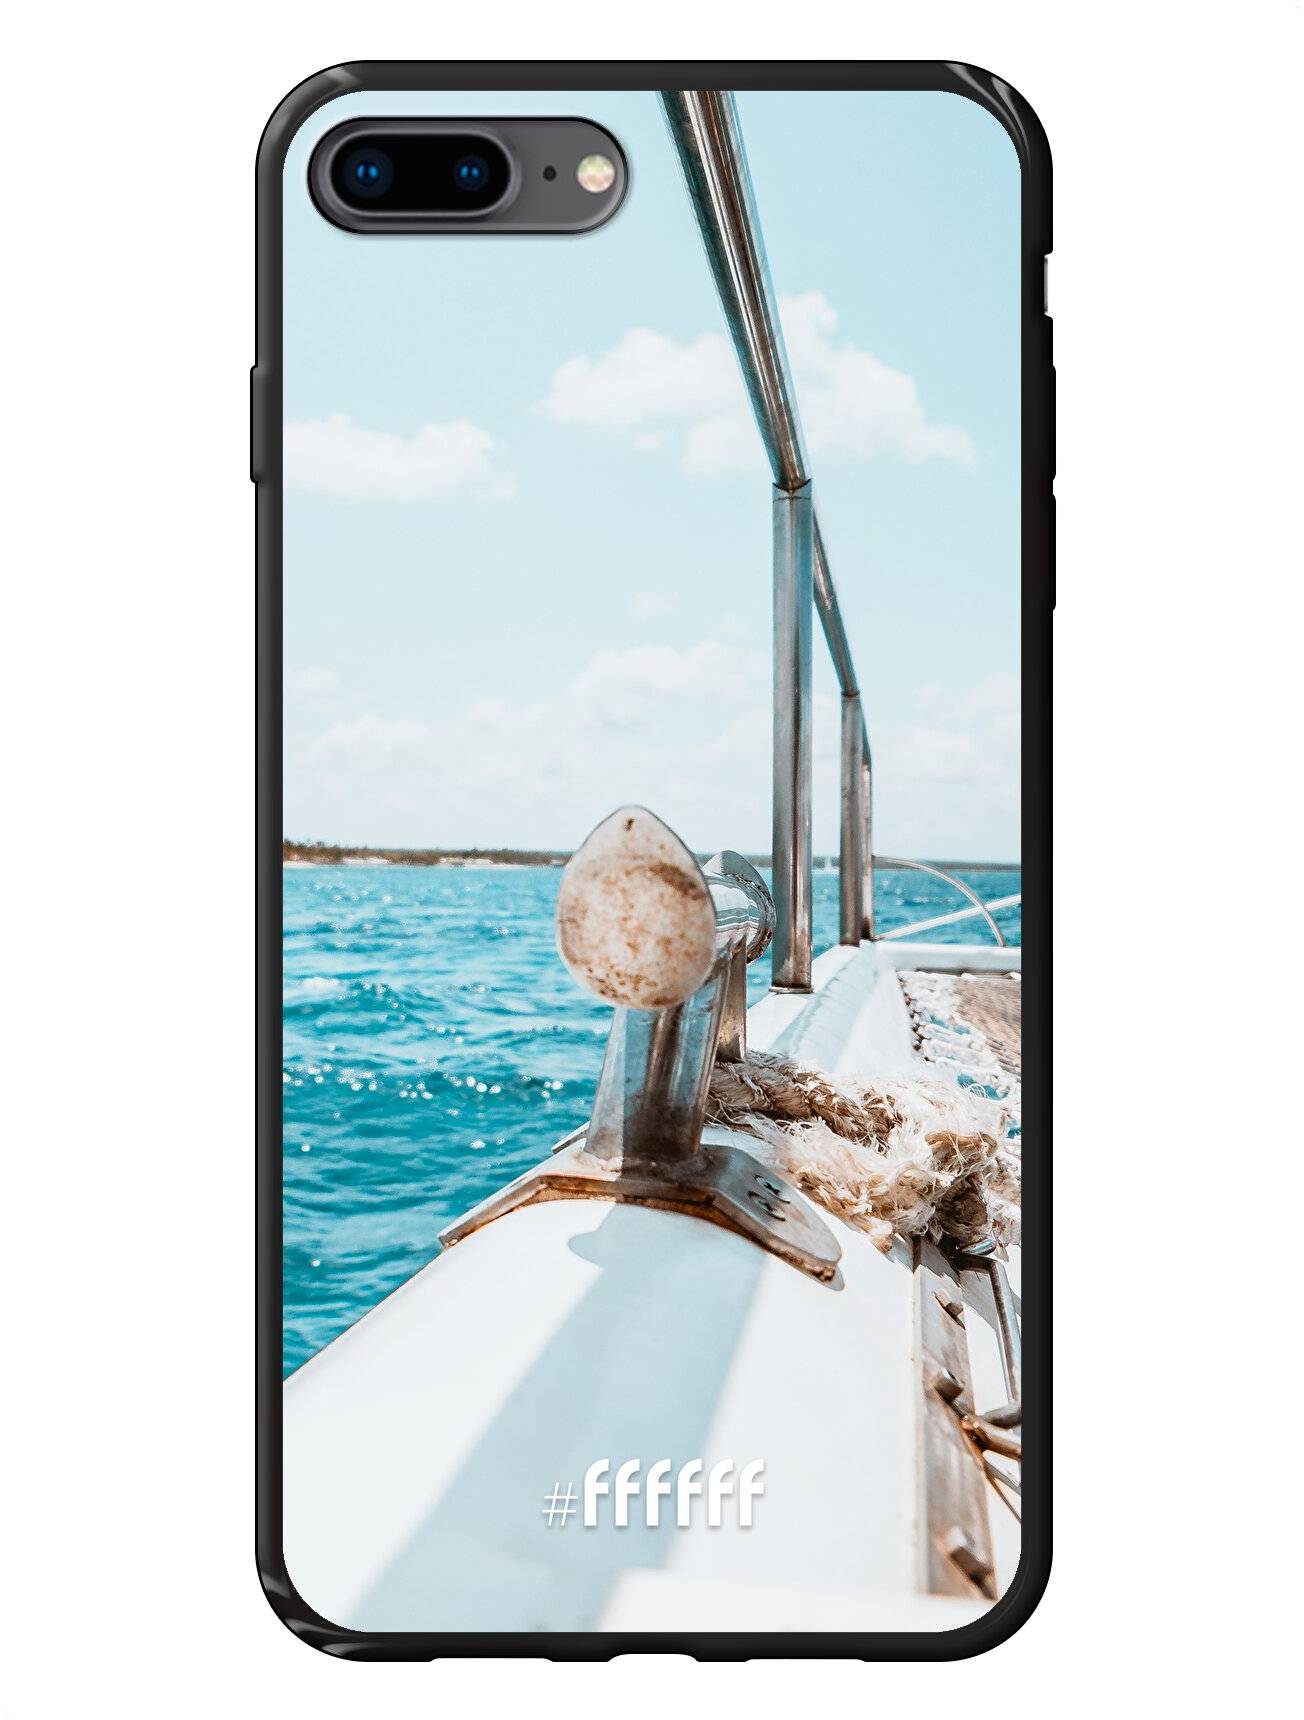 Sailing iPhone 7 Plus